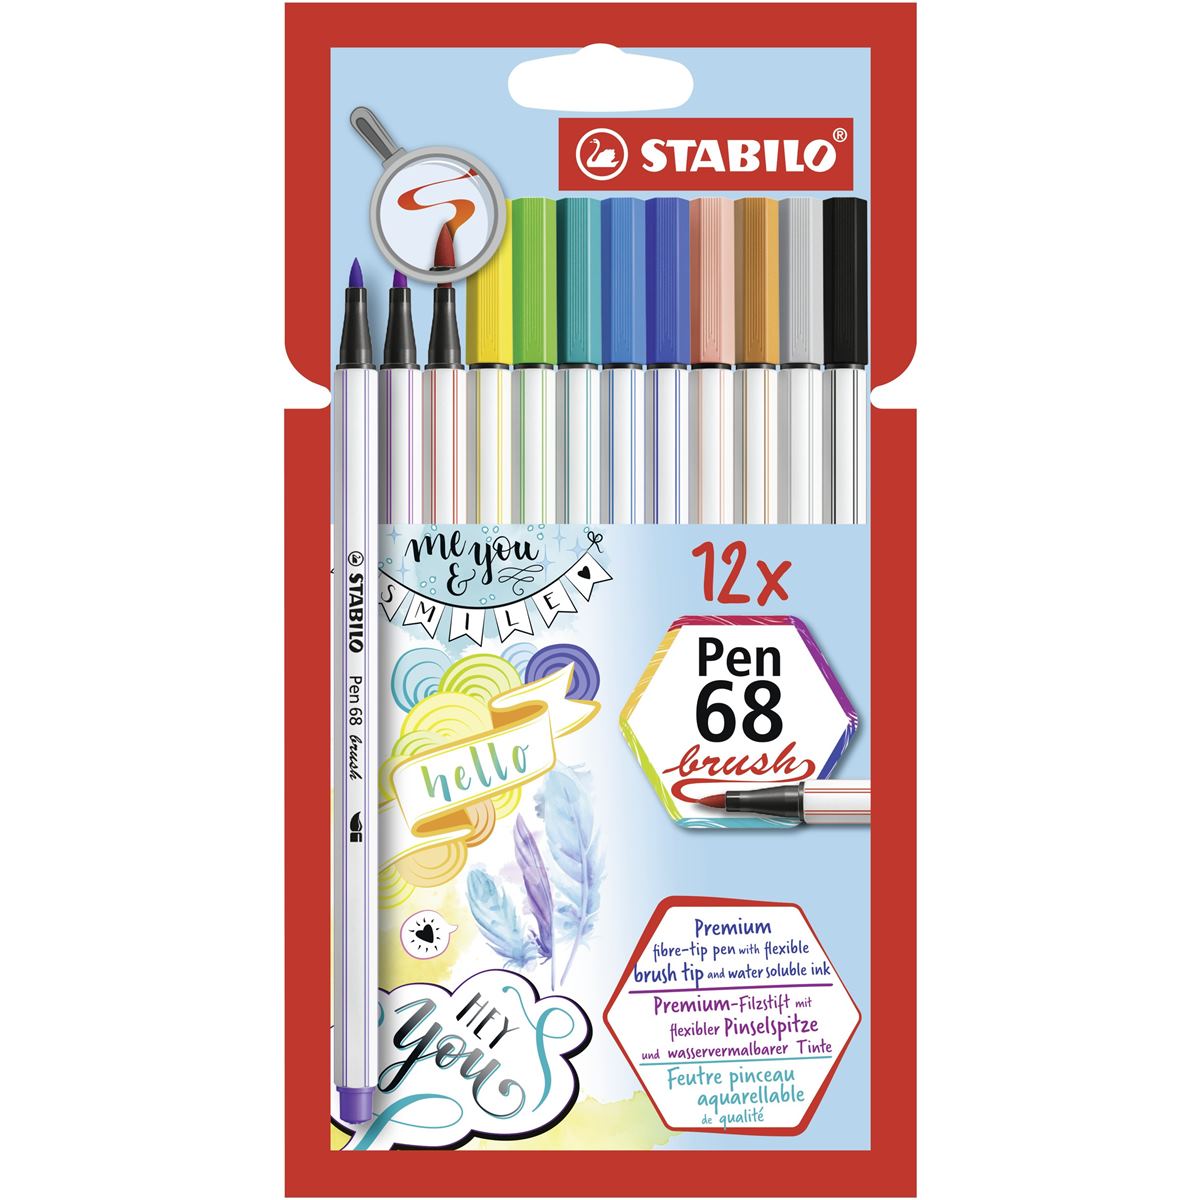 STABILO Pen 68 Brush Arty Fibre-tip Pens - Pack of 12